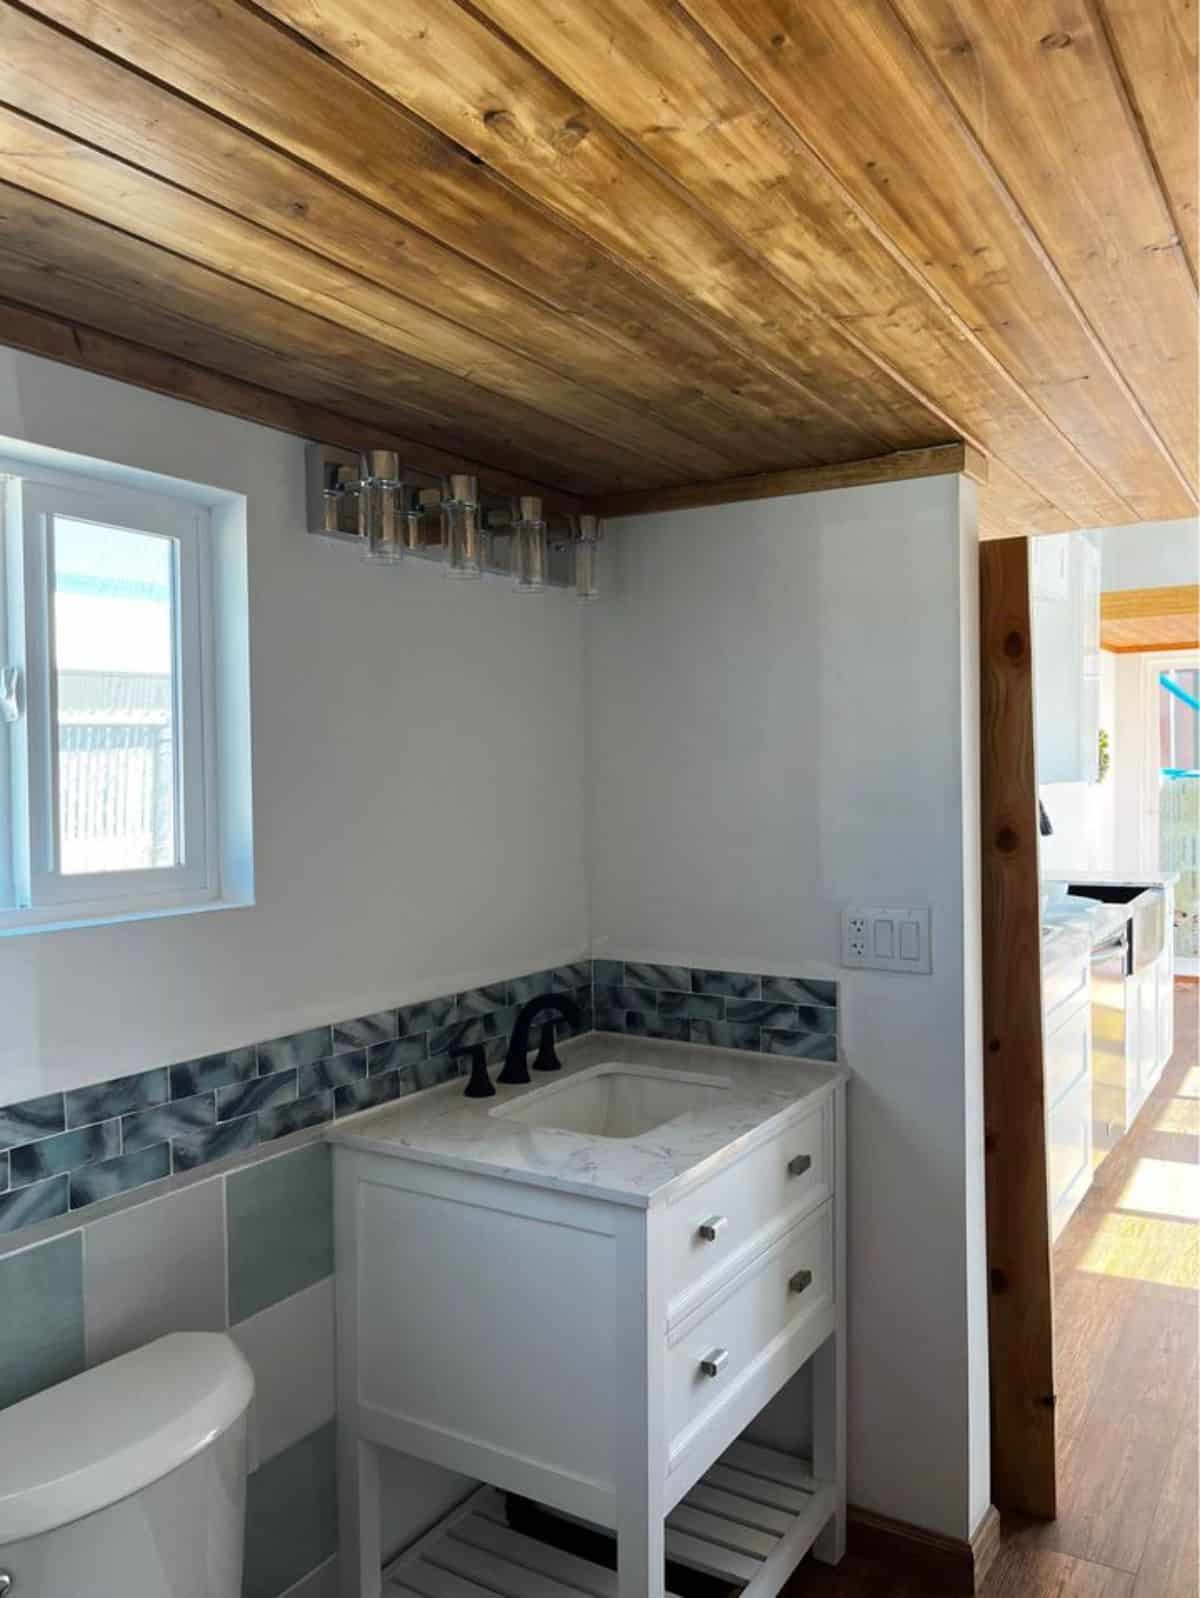 sink with vanity in bathroom of luxury home on wheels